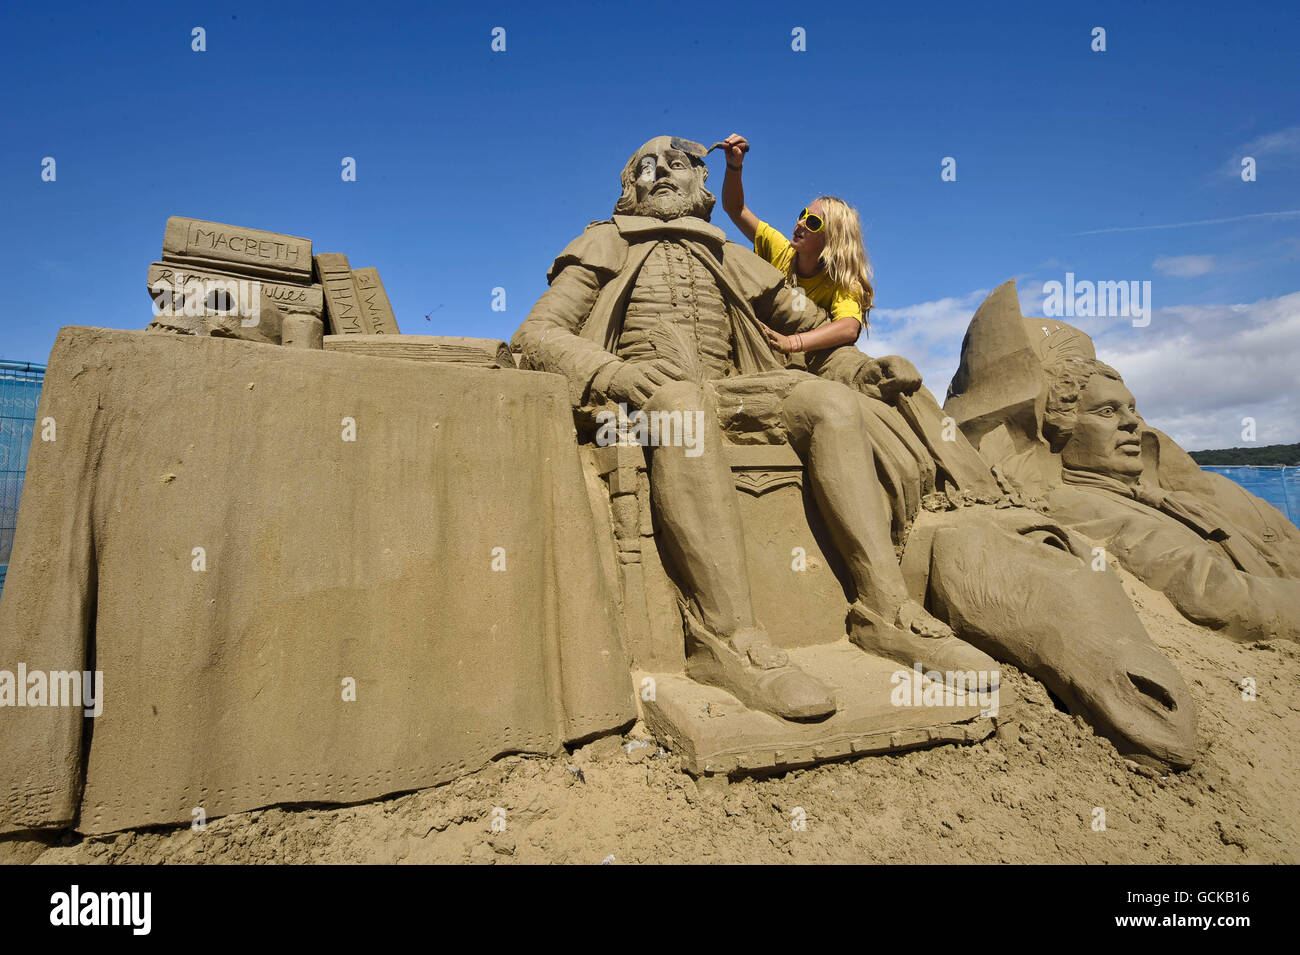 Le sculpteur de sable et artiste Nicola Wood, 27 ans, de Leicester travaille sur sa sculpture de William Shakespeare dans le Weston-super-Mare Sand Sculpture Festival sur la plage, qui cette année a le thème et la célébration de toutes choses britanniques. Banque D'Images